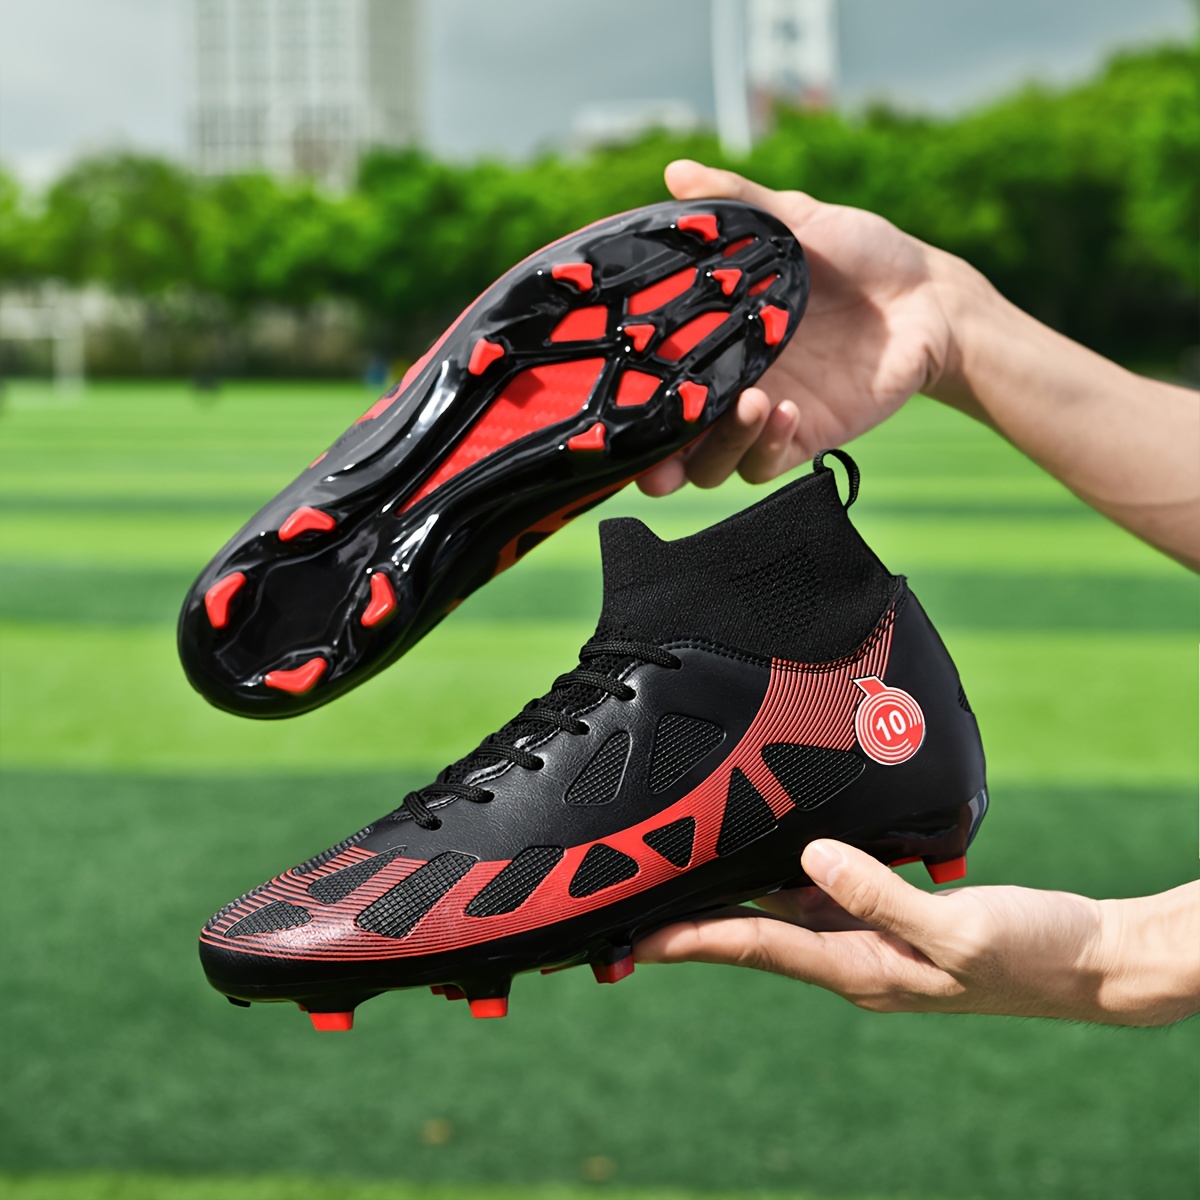 Zapatos de fútbol: 5 tendencias experimentadas para impulsar las ventas